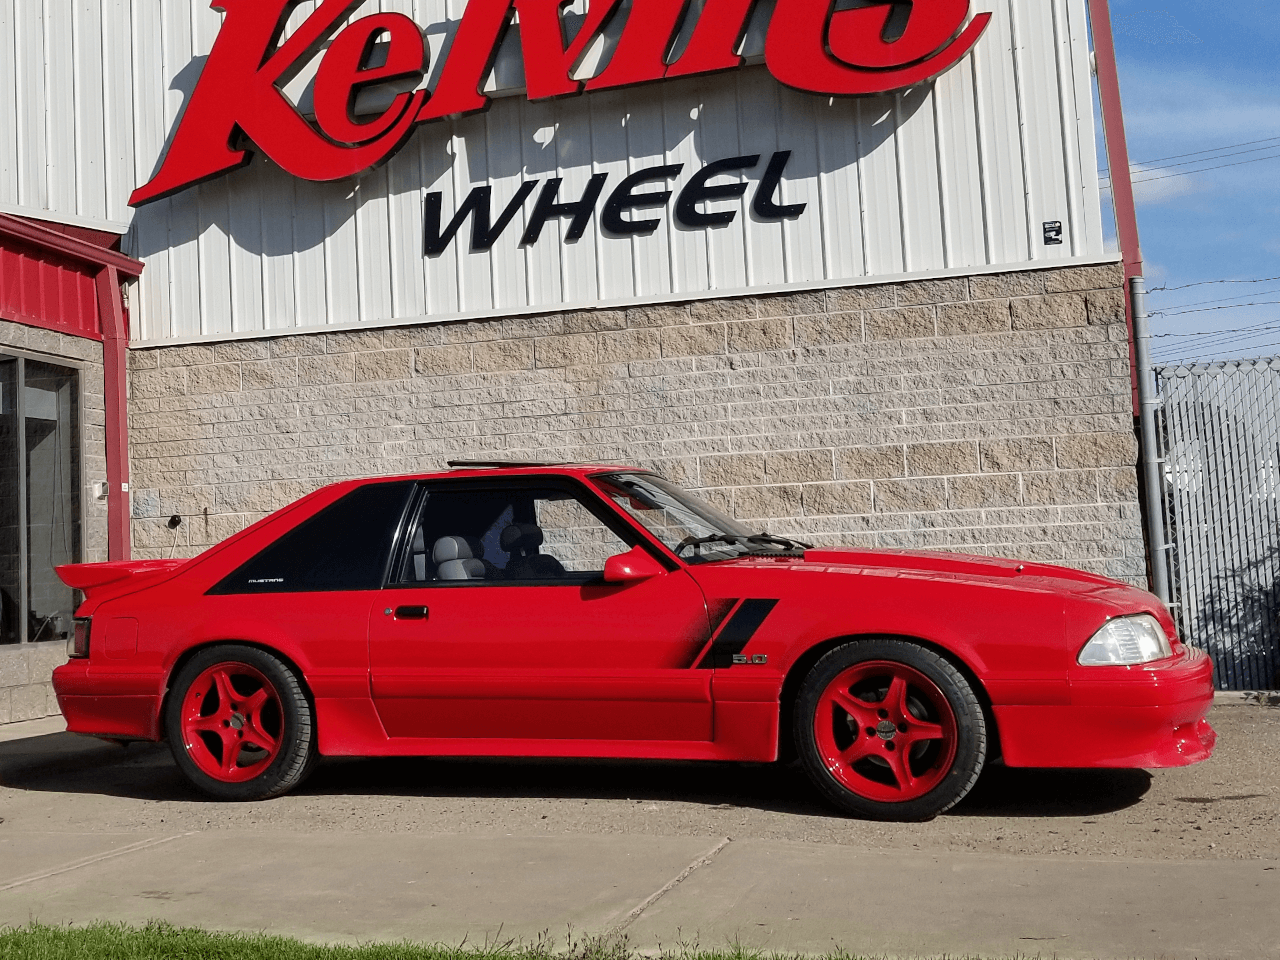 Red Mustang with custom wheels below Kelvins Wheel logo